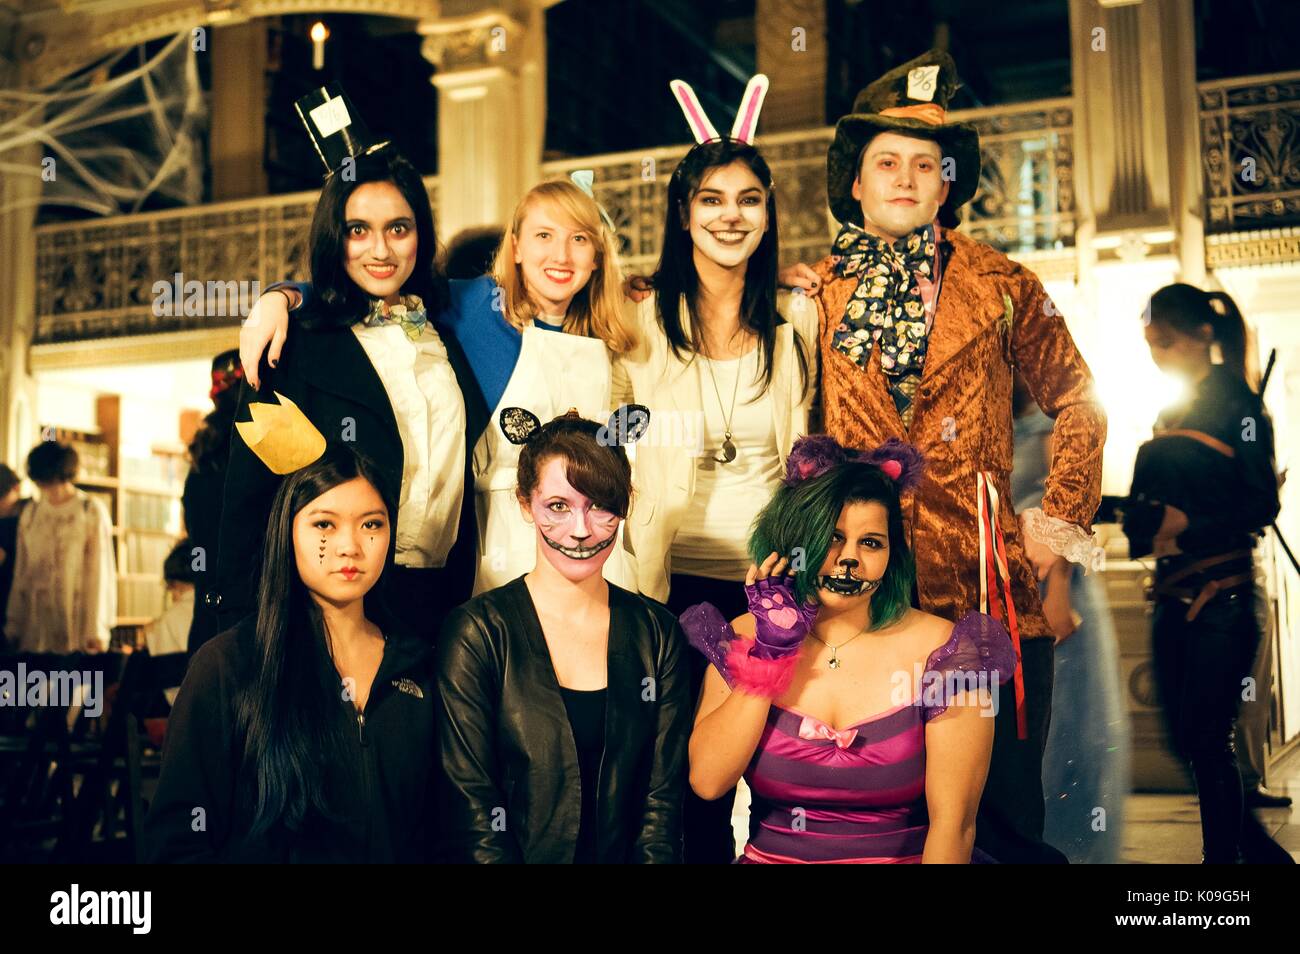 Un groupe d'étudiants du collège féminin posent pour une photo, ils sont tous habillés comme des personnages de l'histoire 'Alice in Wonderland', l'Halloween à la Johns Hopkins University's George Peabody Library, 2015. Avec la permission de Eric Chen. Banque D'Images